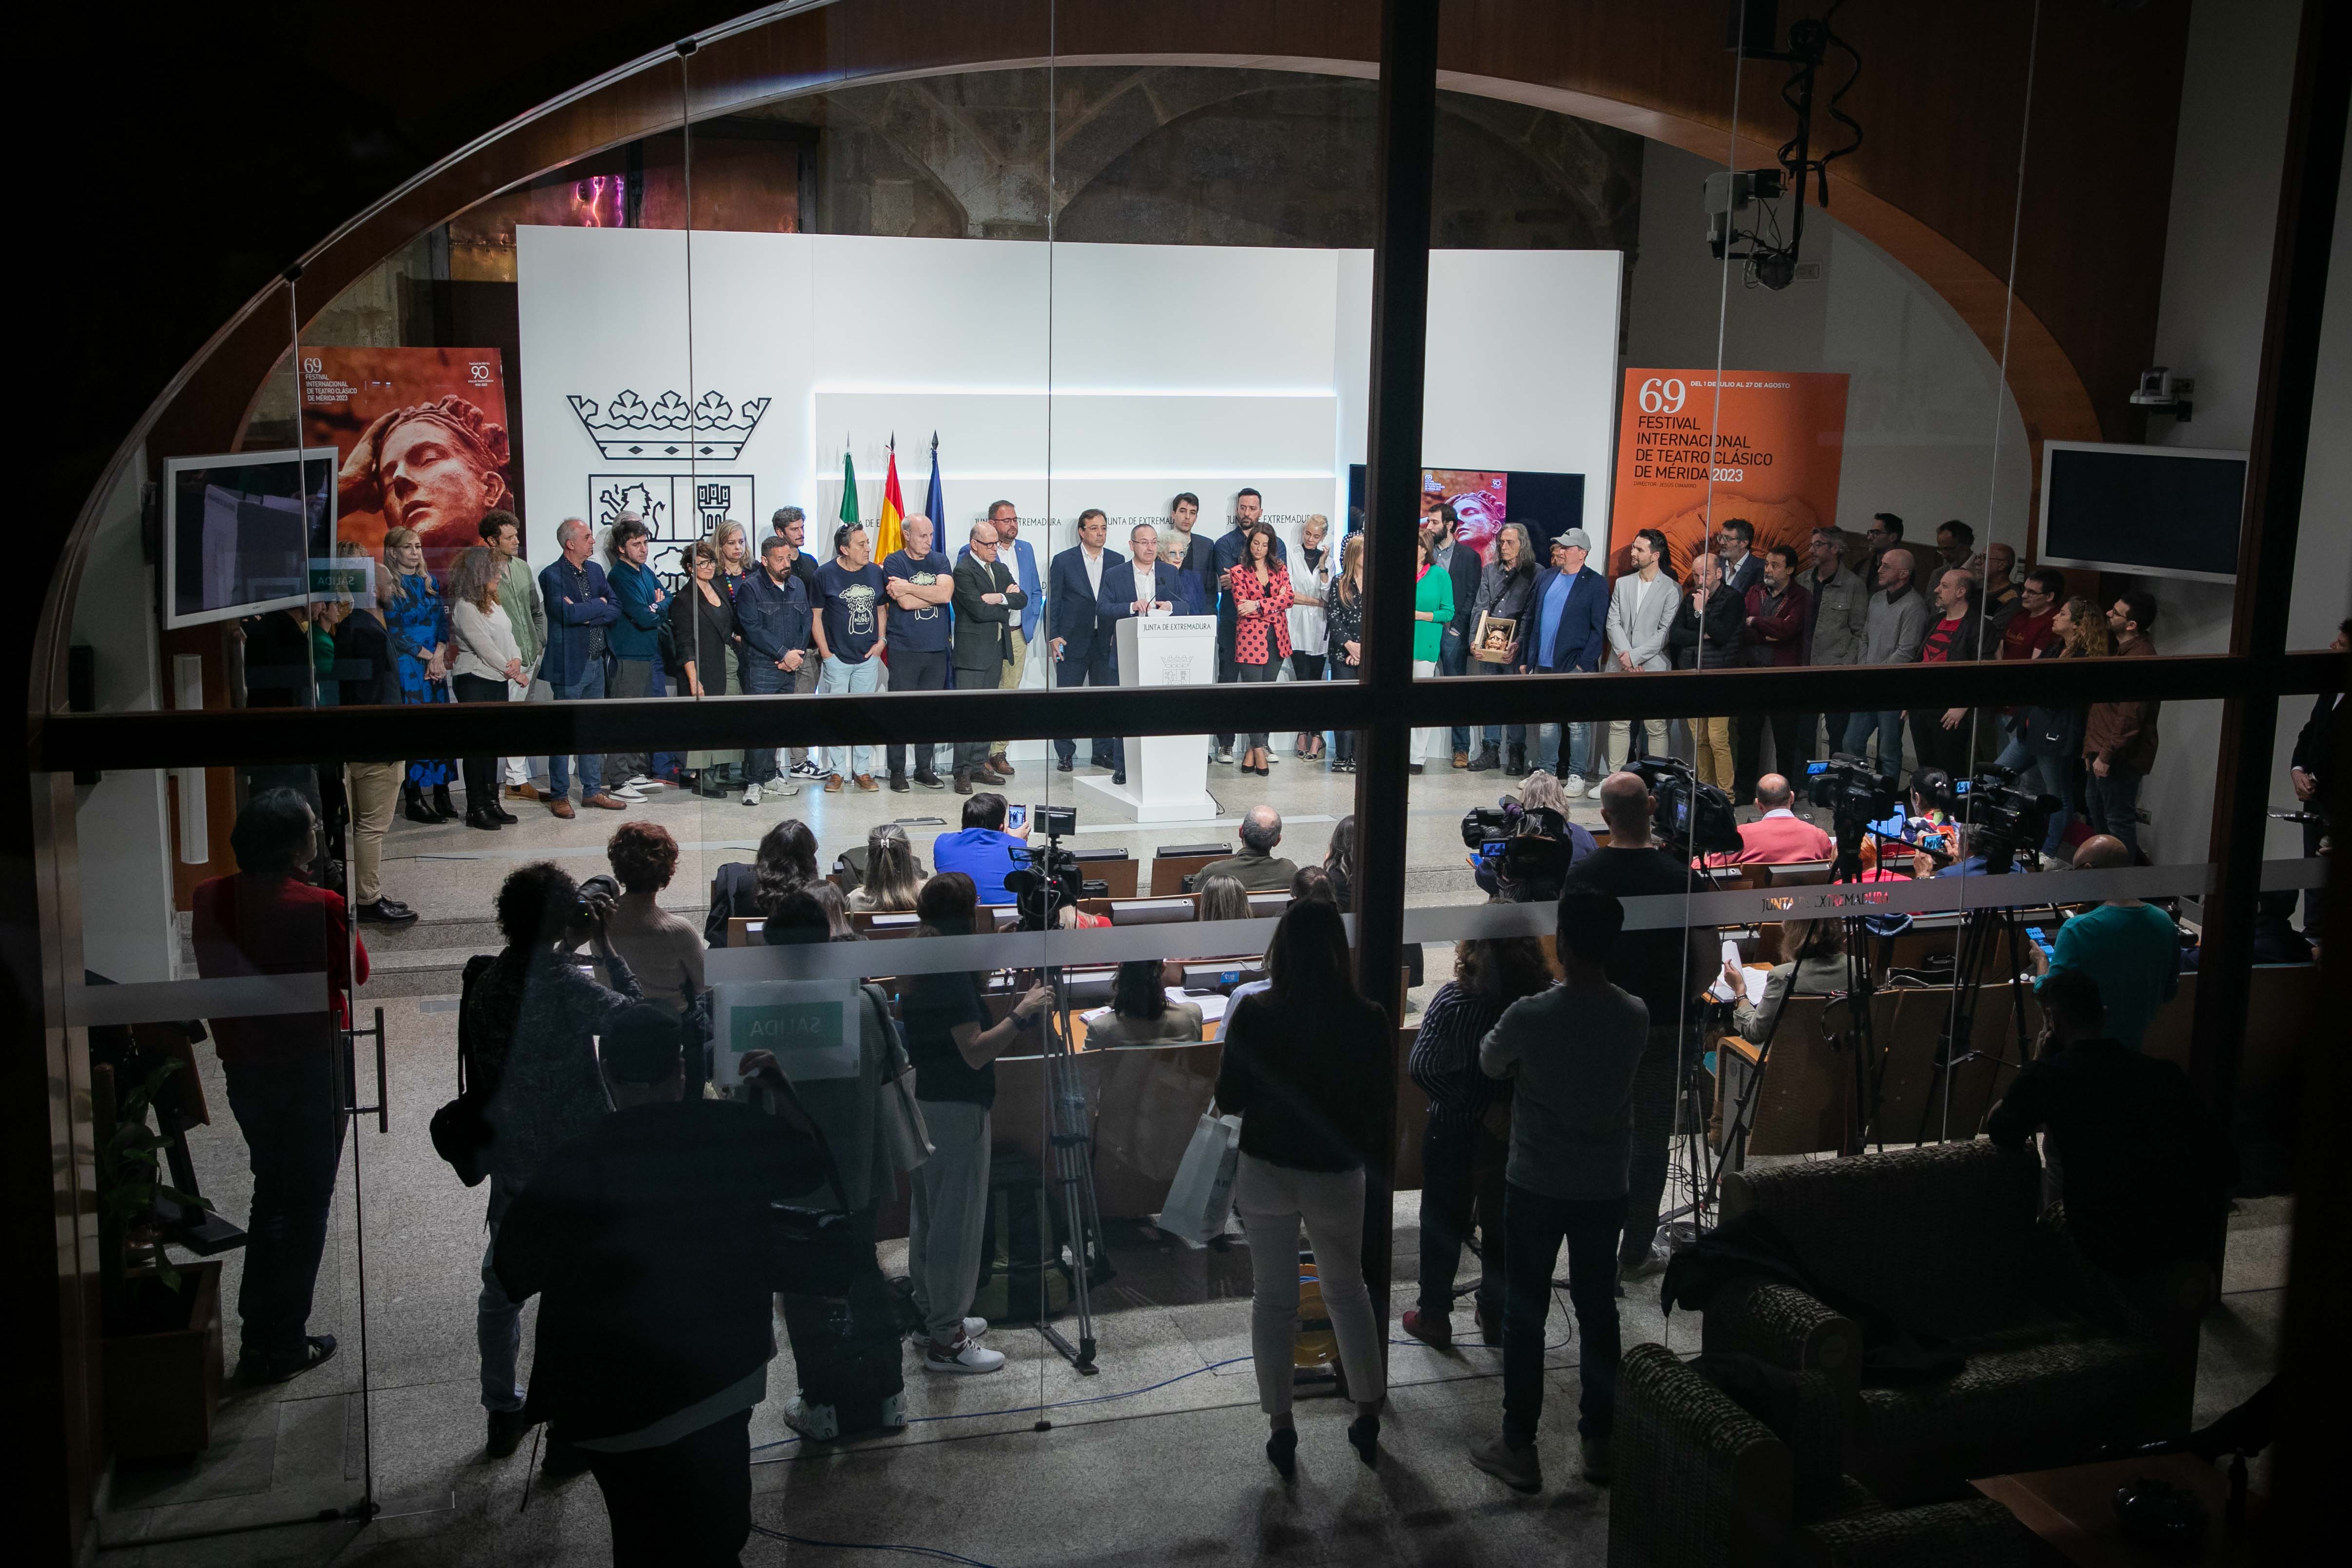 Presentación de la programación de la 69 edición del Festival de Mérida